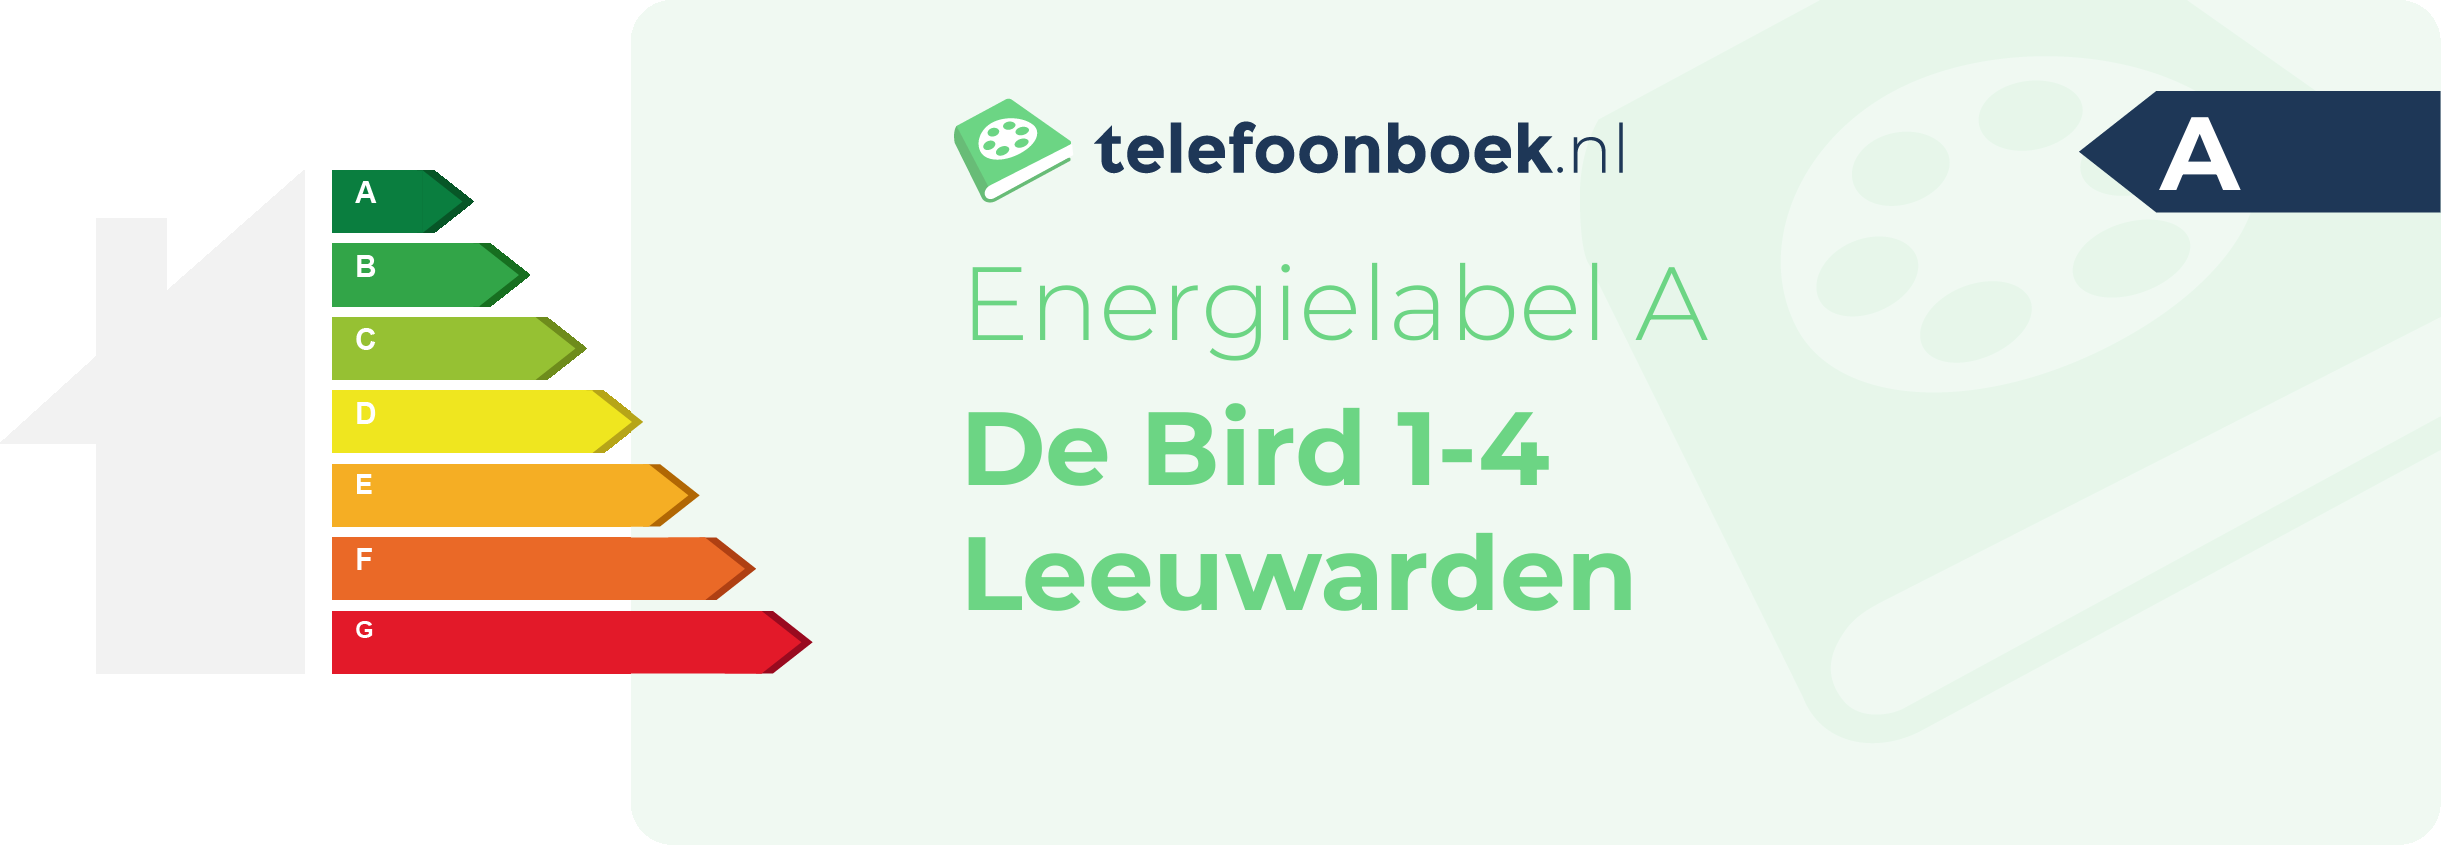 Energielabel De Bird 1-4 Leeuwarden